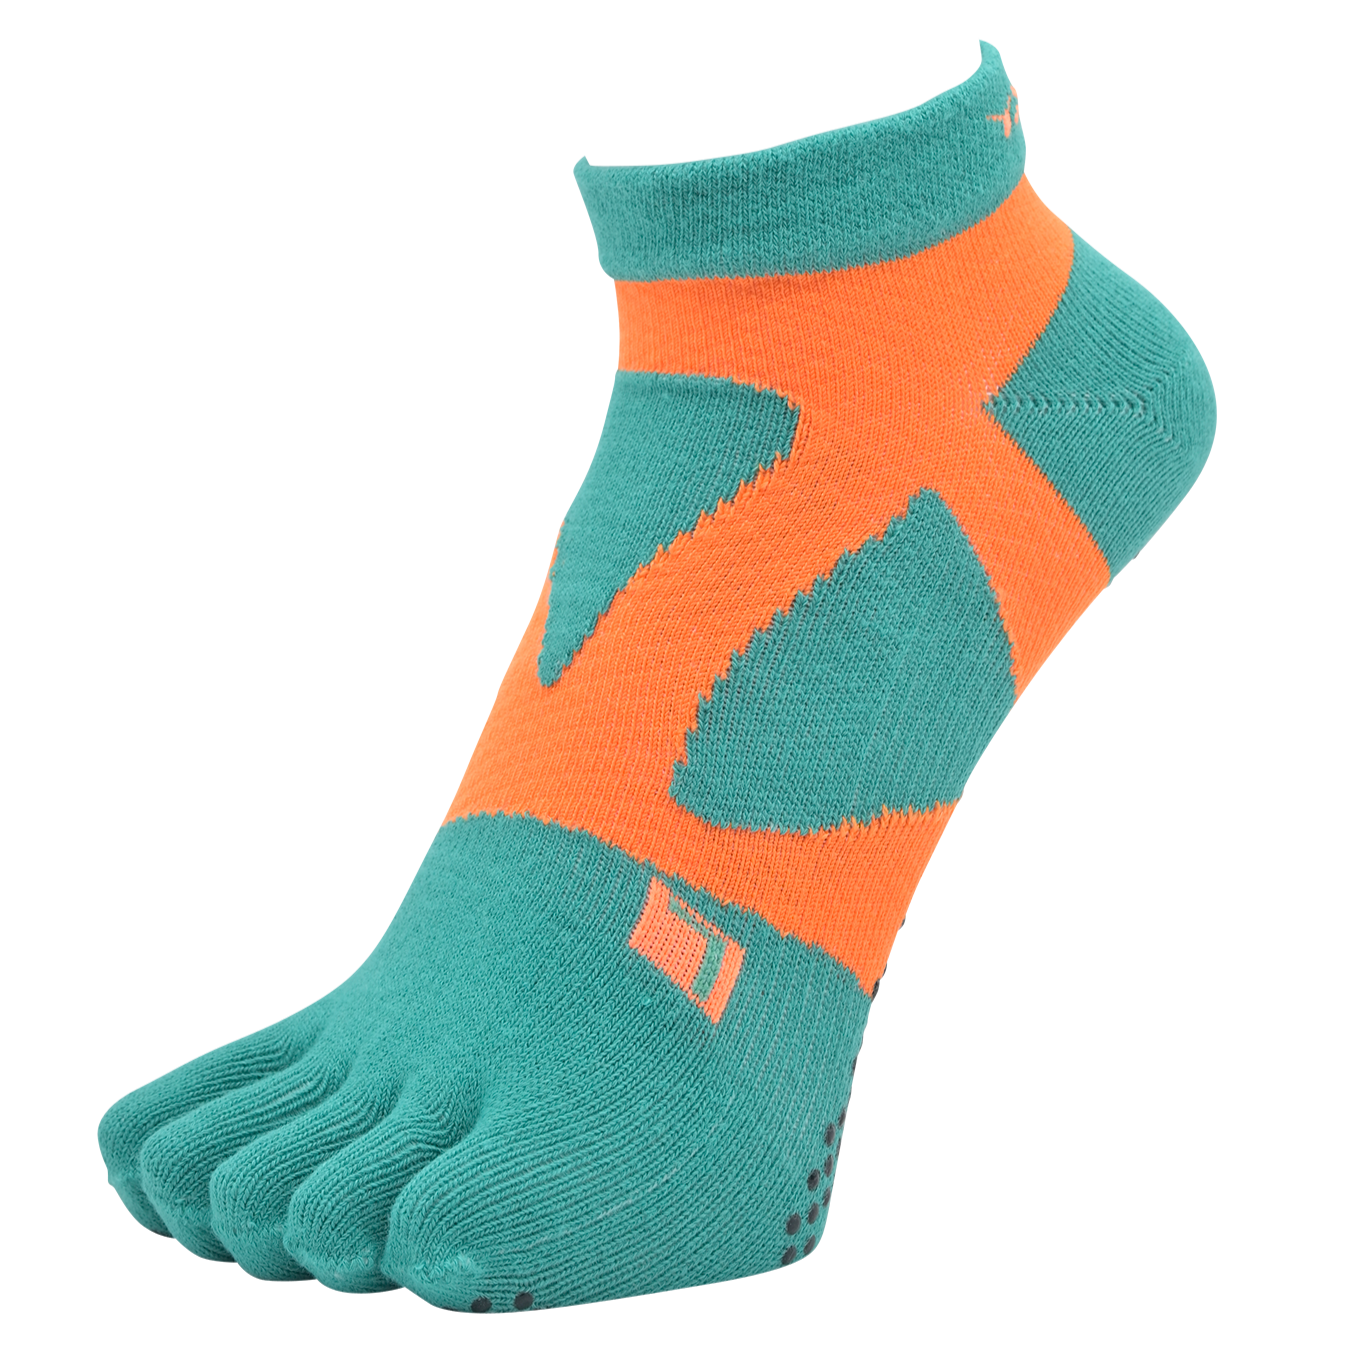 YAMAtune - Spider-Arch Compression - Short 5-Toe Socks - Non-Slip Dots - Green/Orange